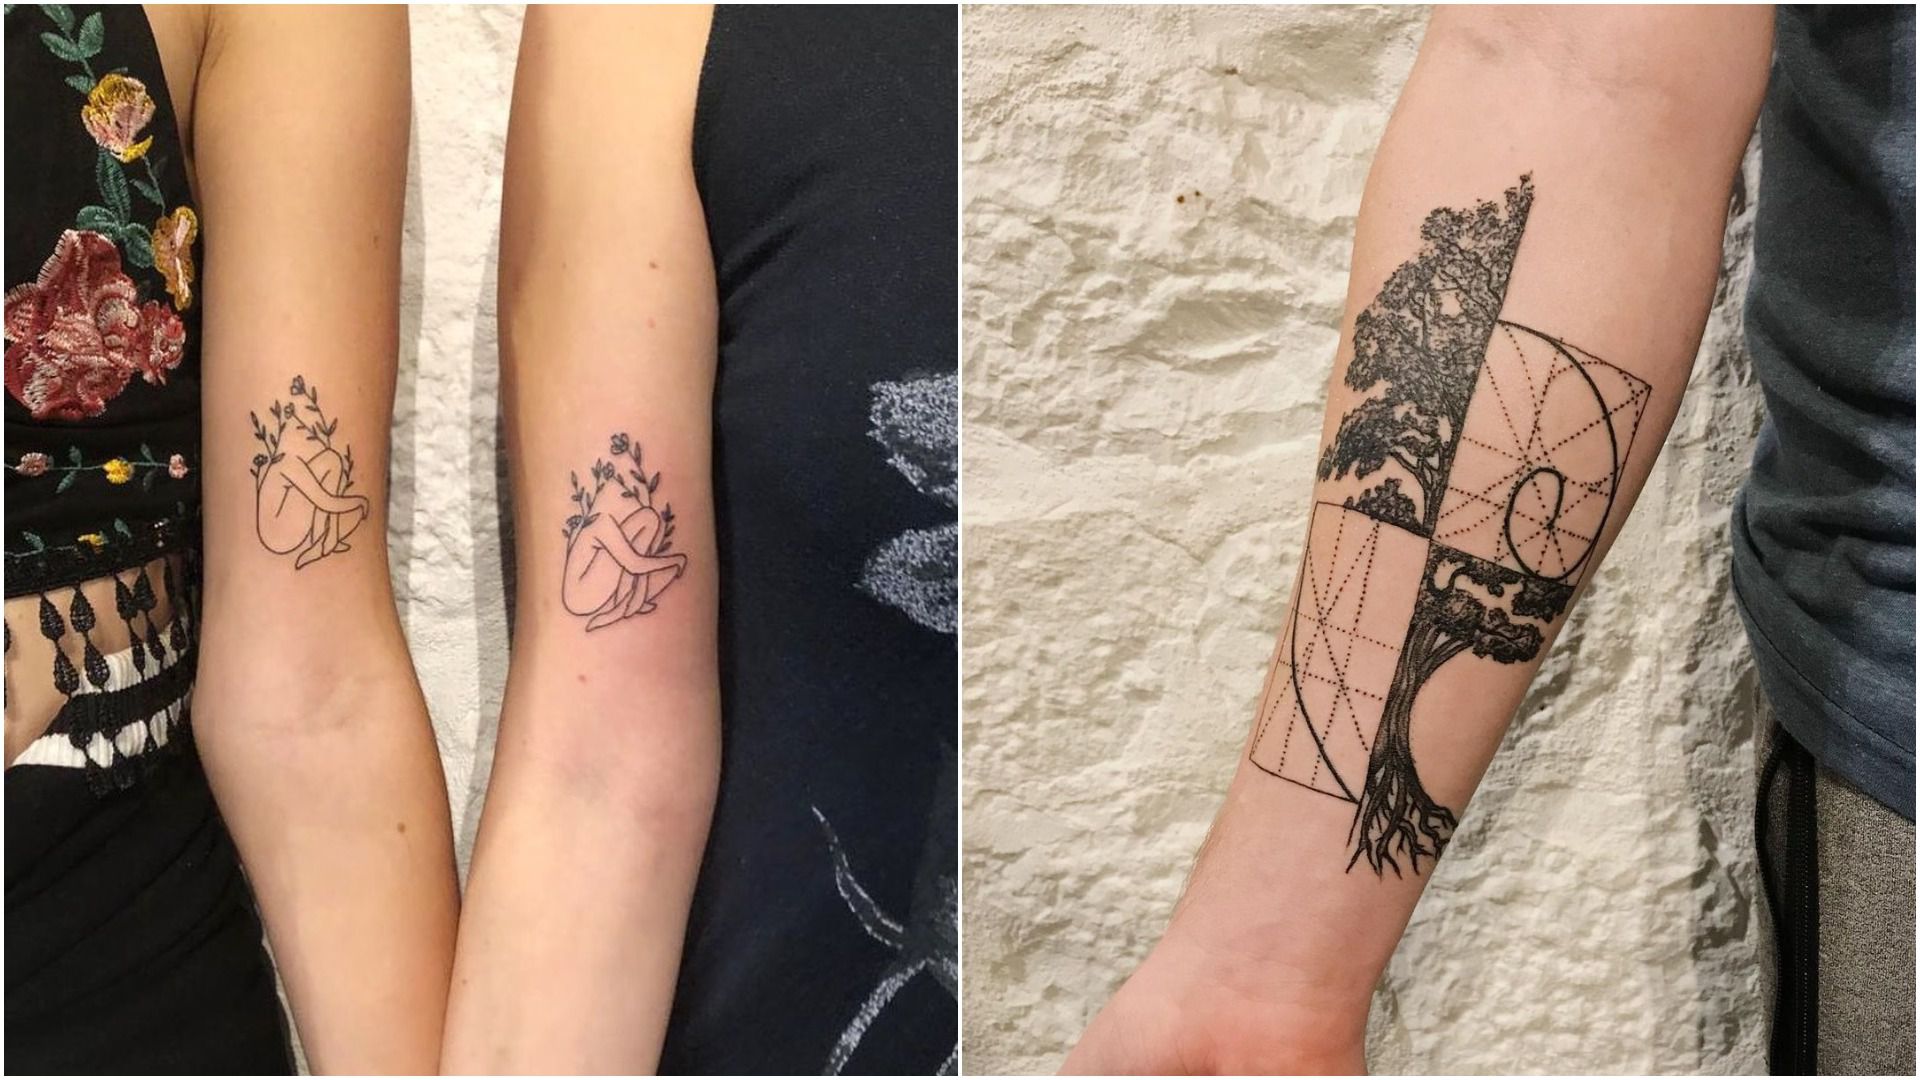 Tetovirajte se i učinite dobro djelo! Splitski tattoo studio donira cijeli iznos od sutrašnjeg tetoviranja